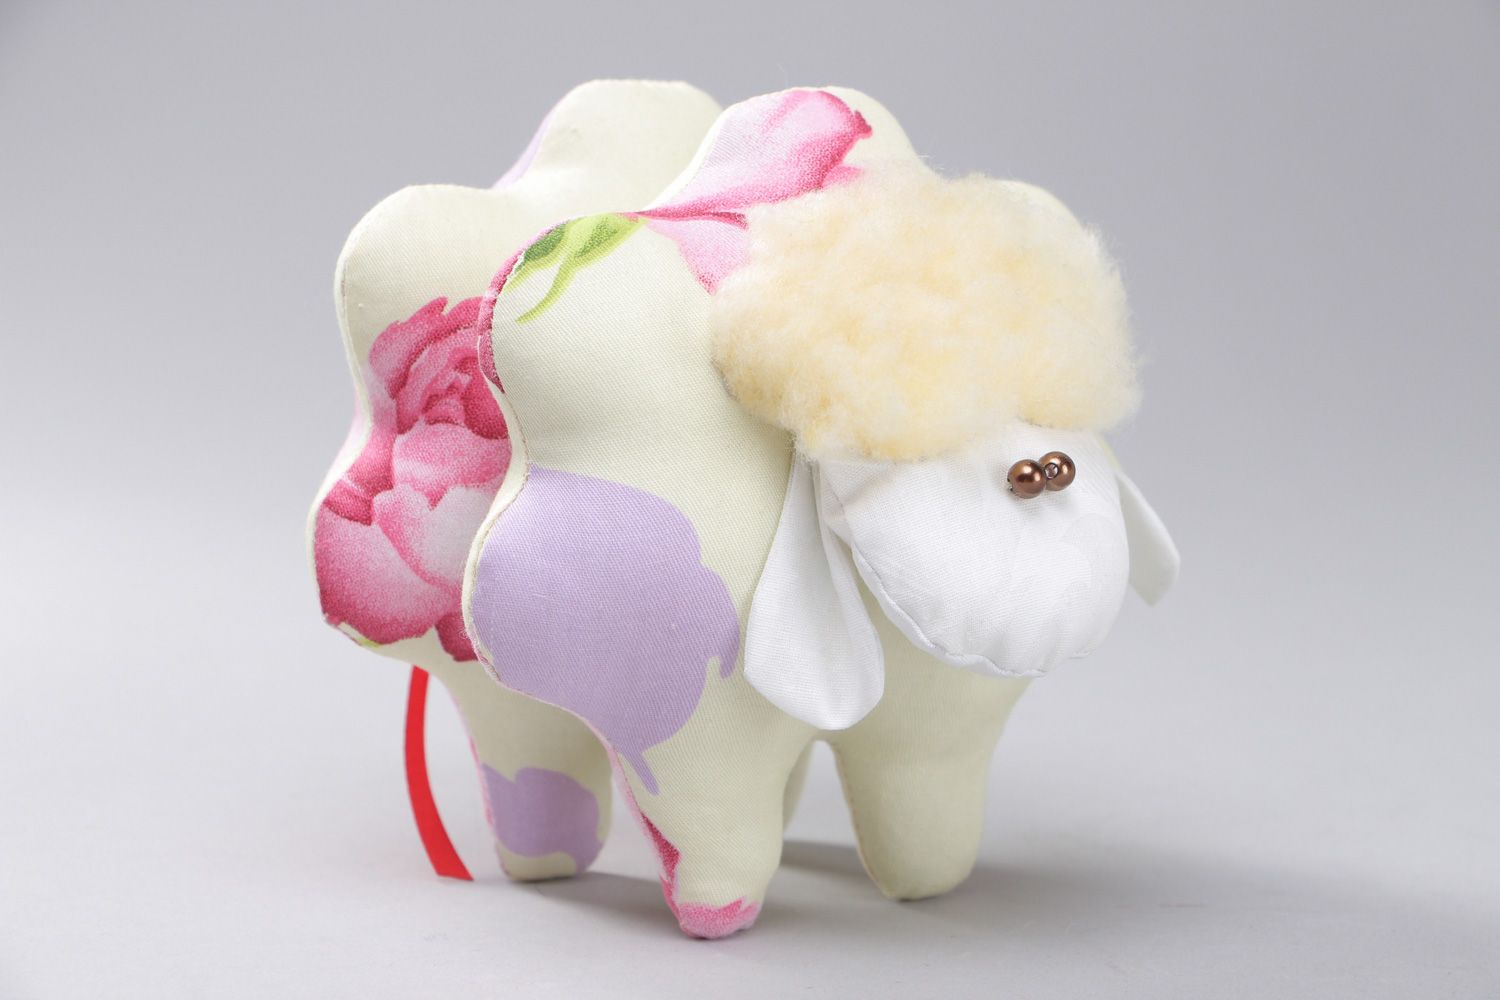 Мягкая игрушка примитив из натурального хлопка ручной работы красивая маленькая овечка фото 1